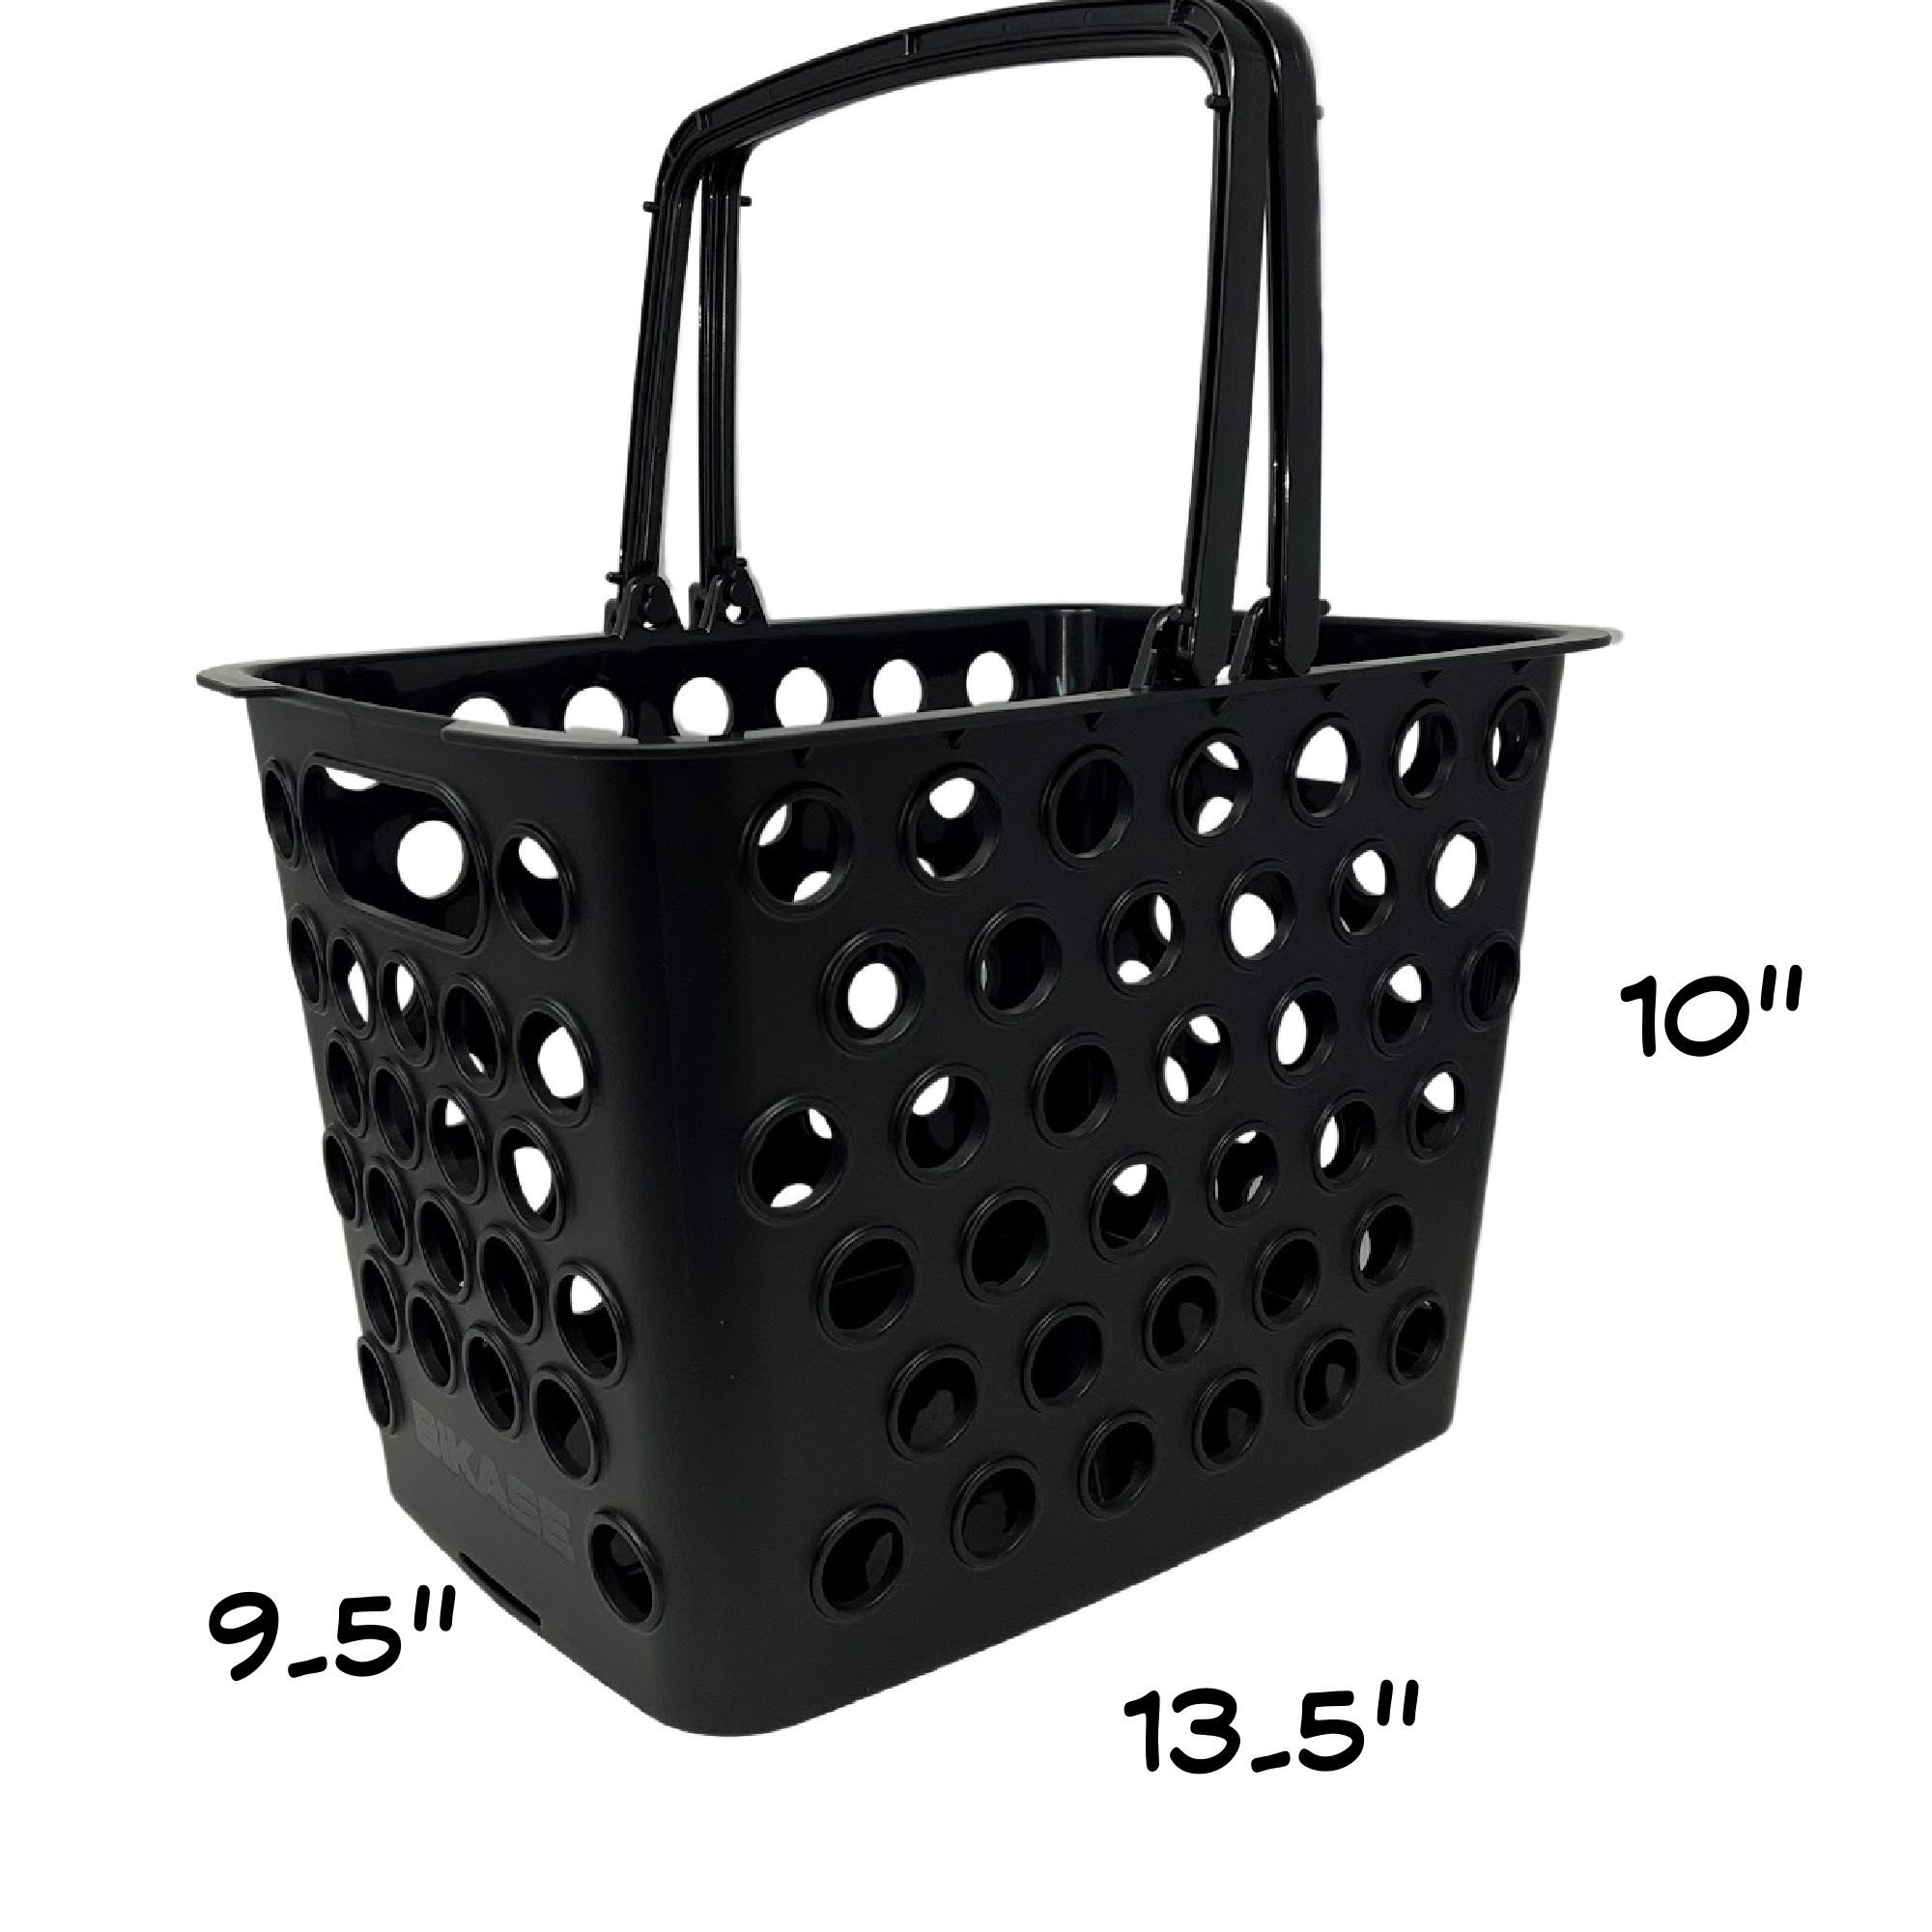 Basket in Black & White, Shopping Basket